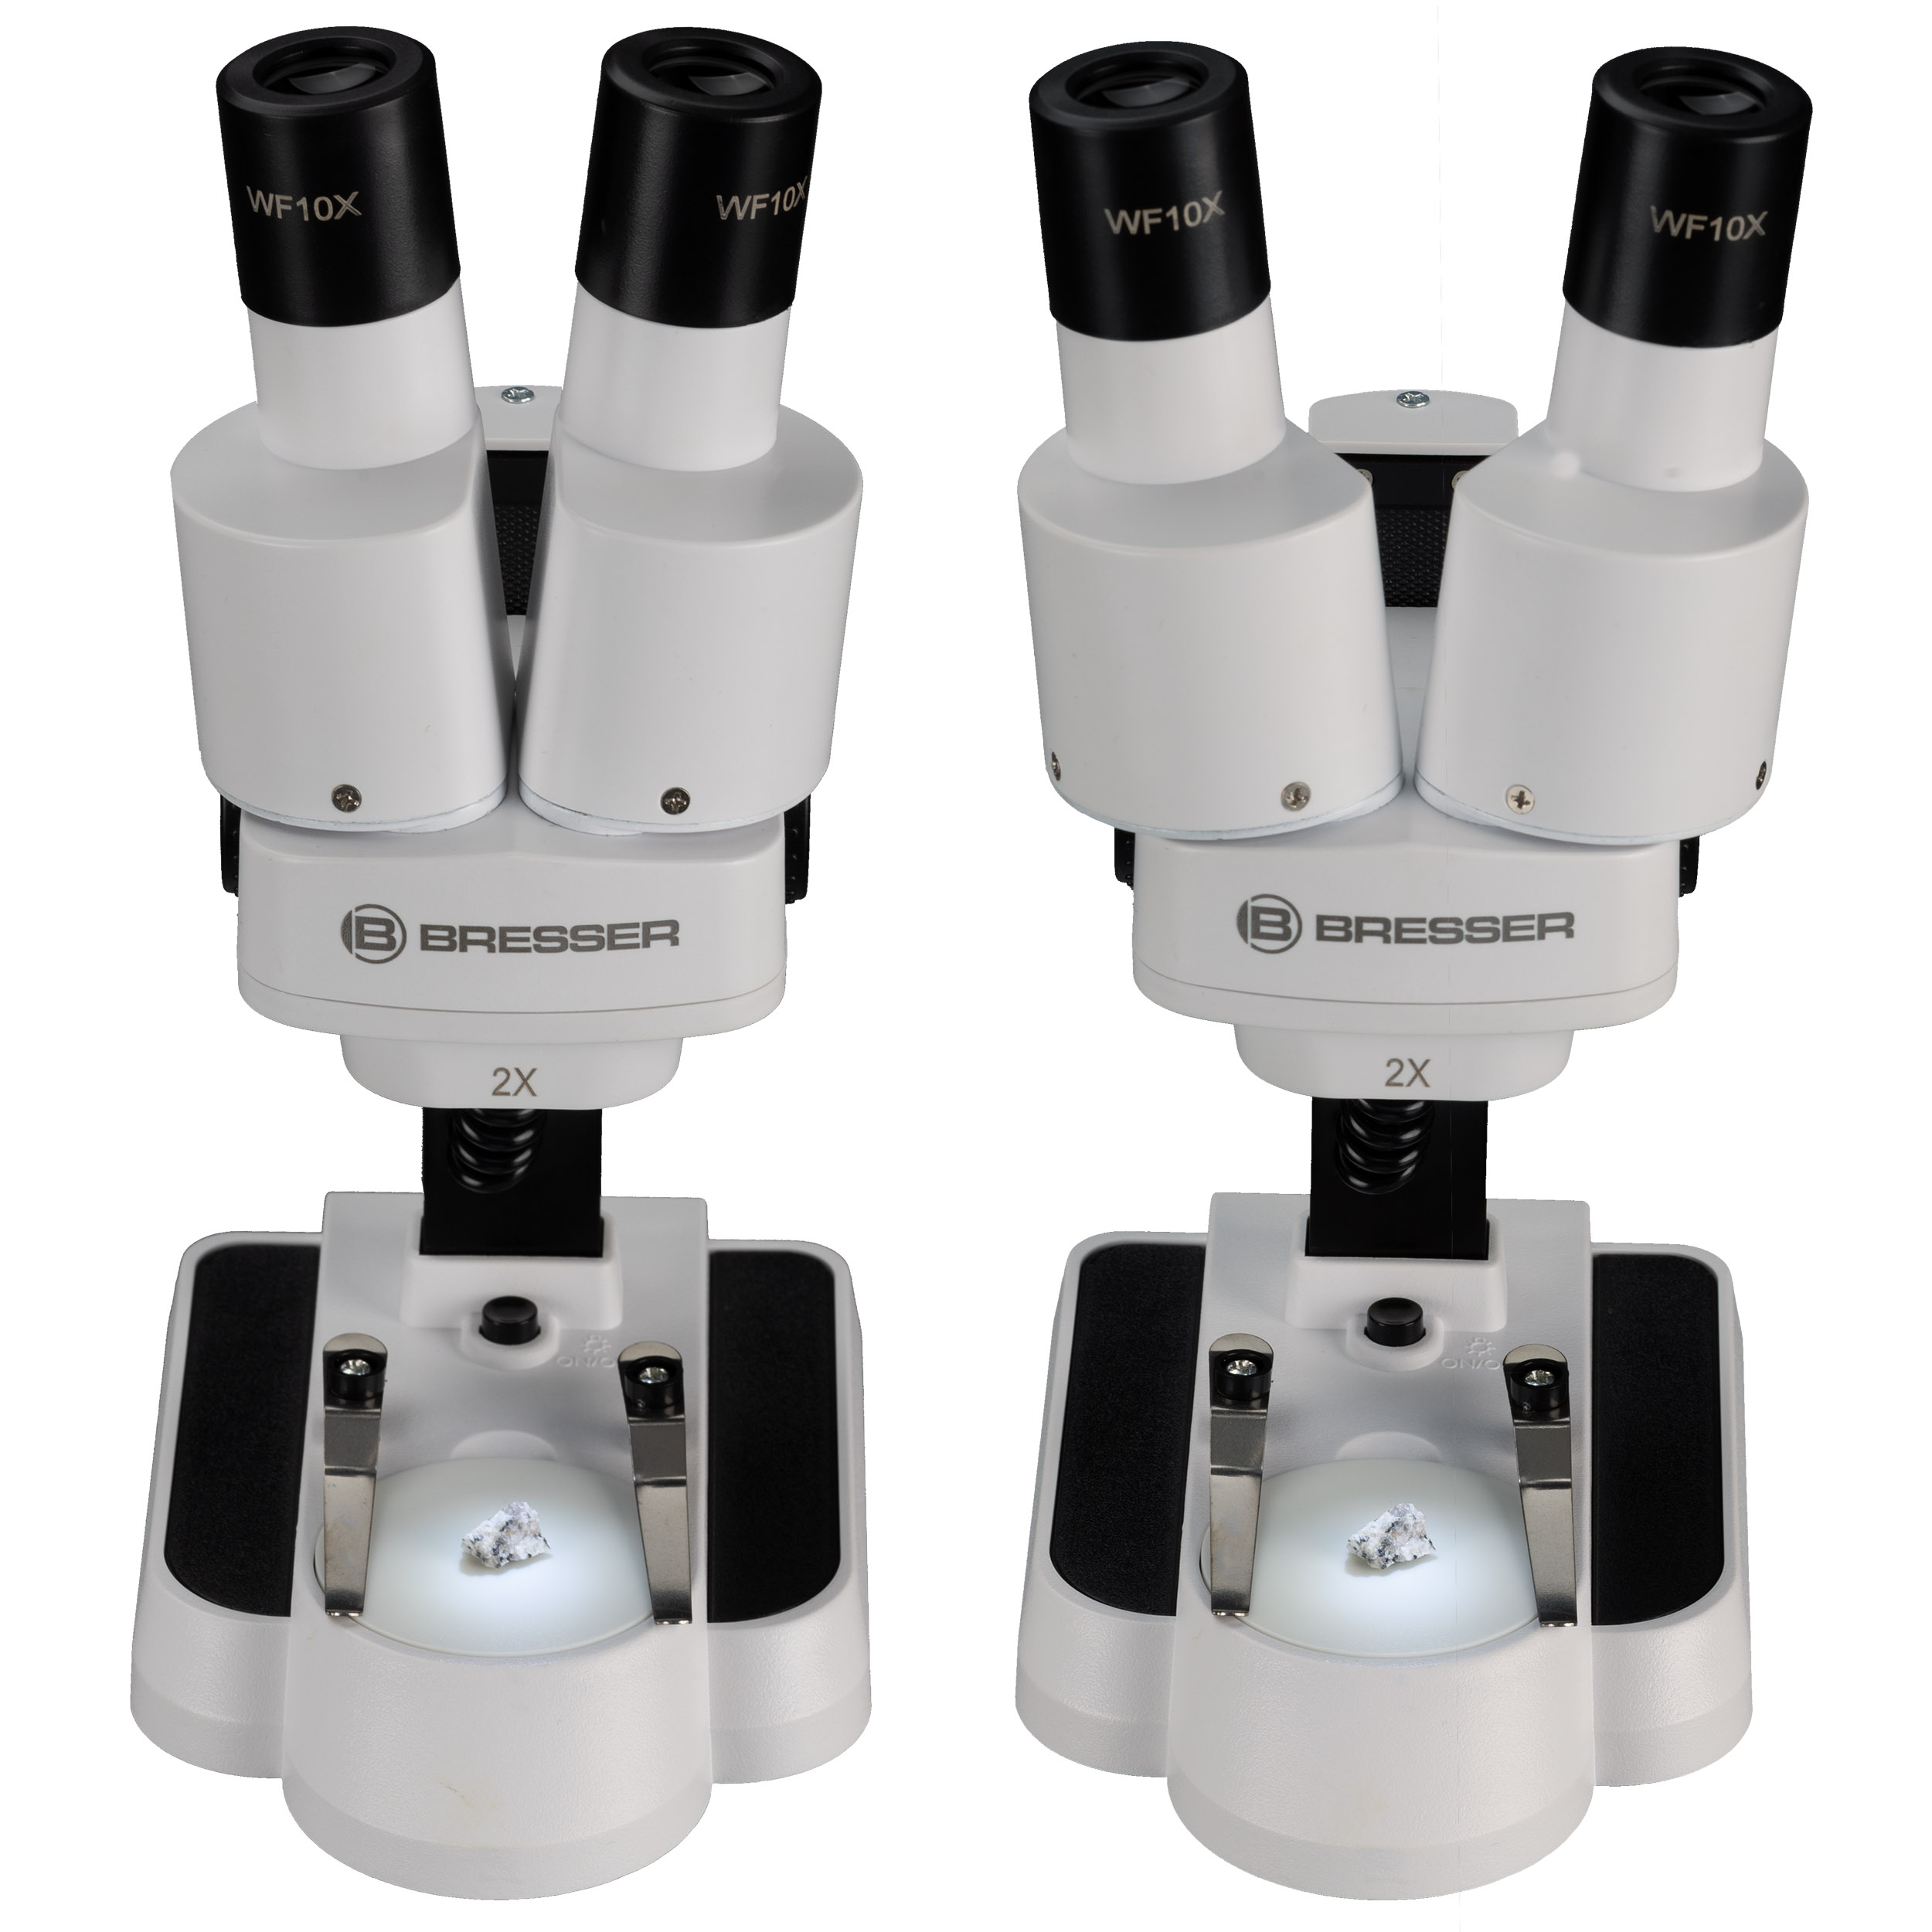 BRESSER JUNIOR 20x Stereo Microscopio